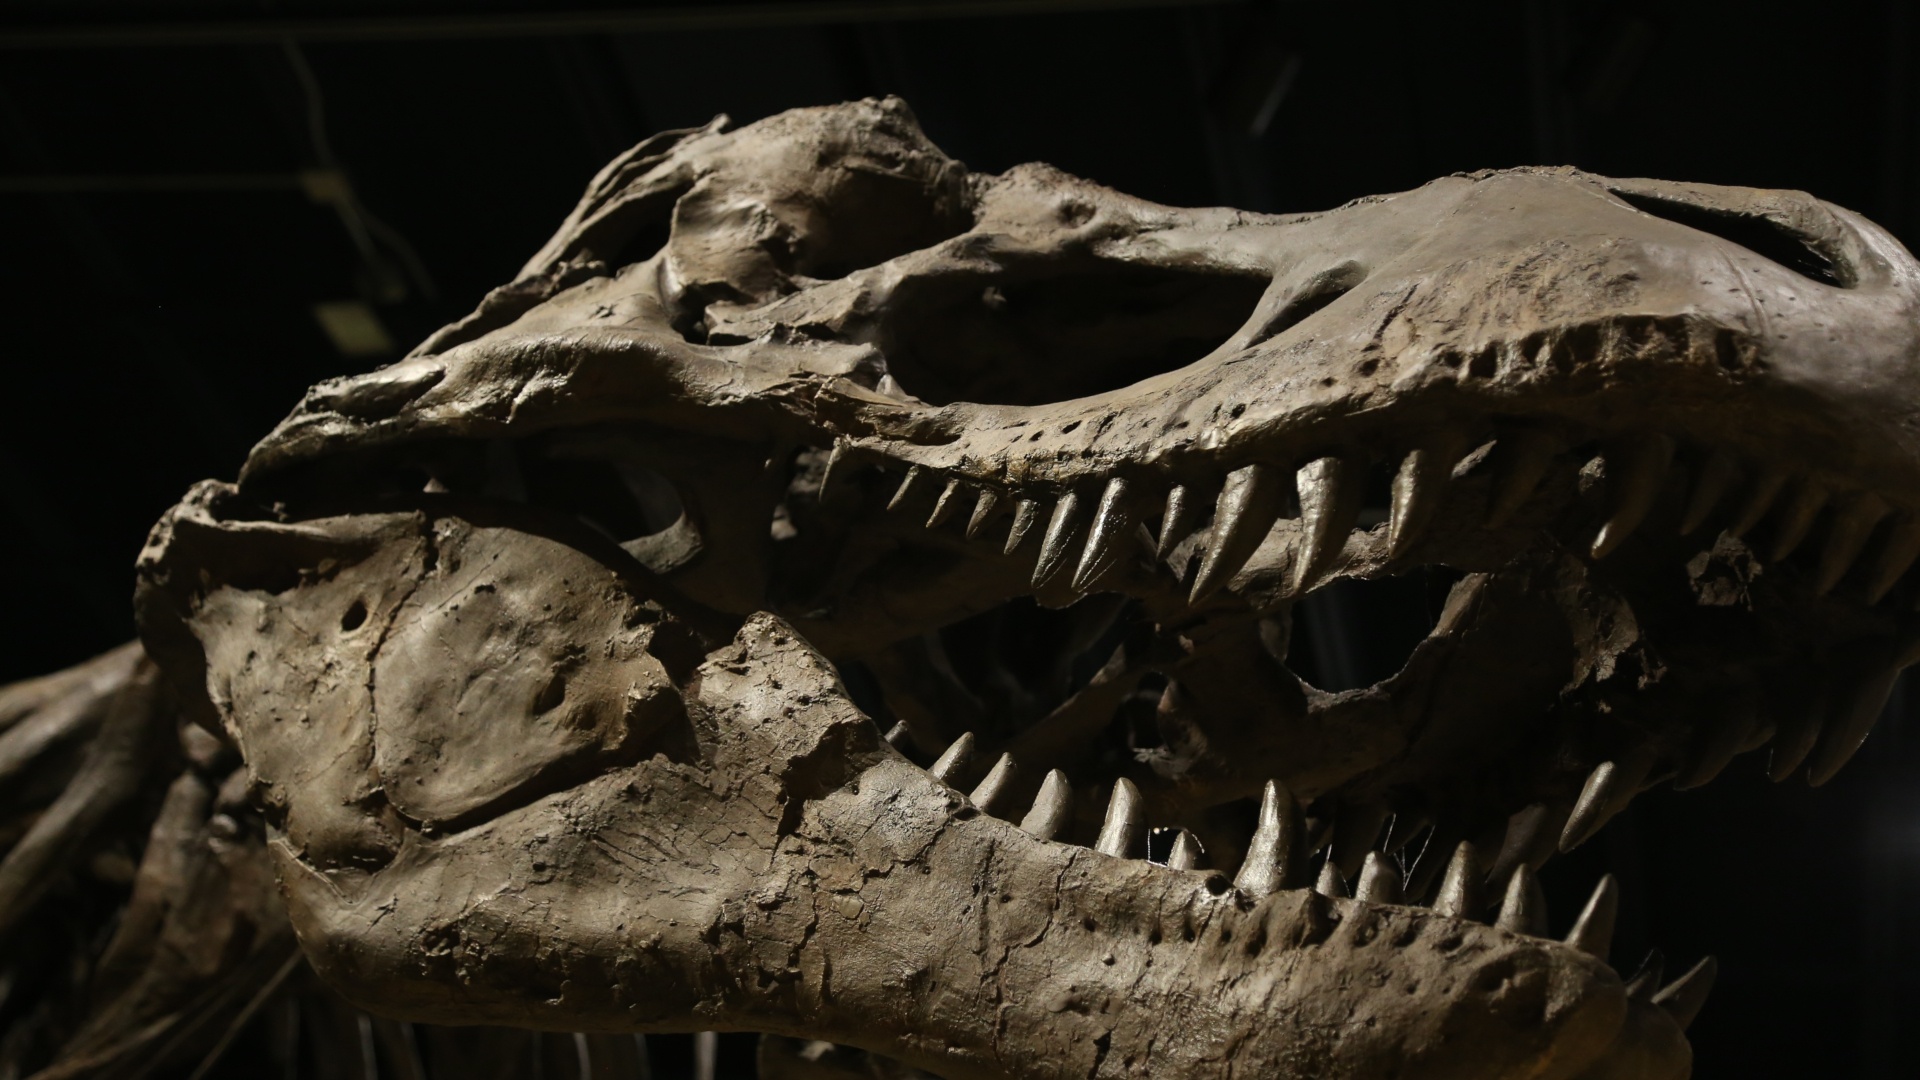 #Wir dachten, der Tyrannosaurus war riesig – nun gibt es Gründe, davon auszugehen, dass er noch viel größer war